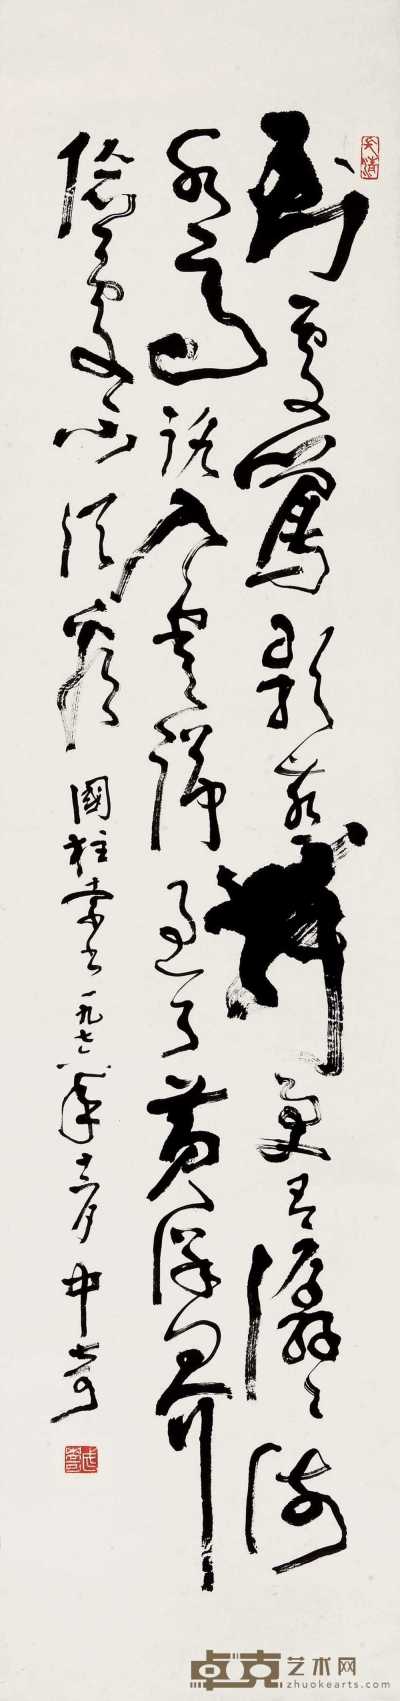 武中奇 1976年作 草书条幅 立轴 139×35.5cm